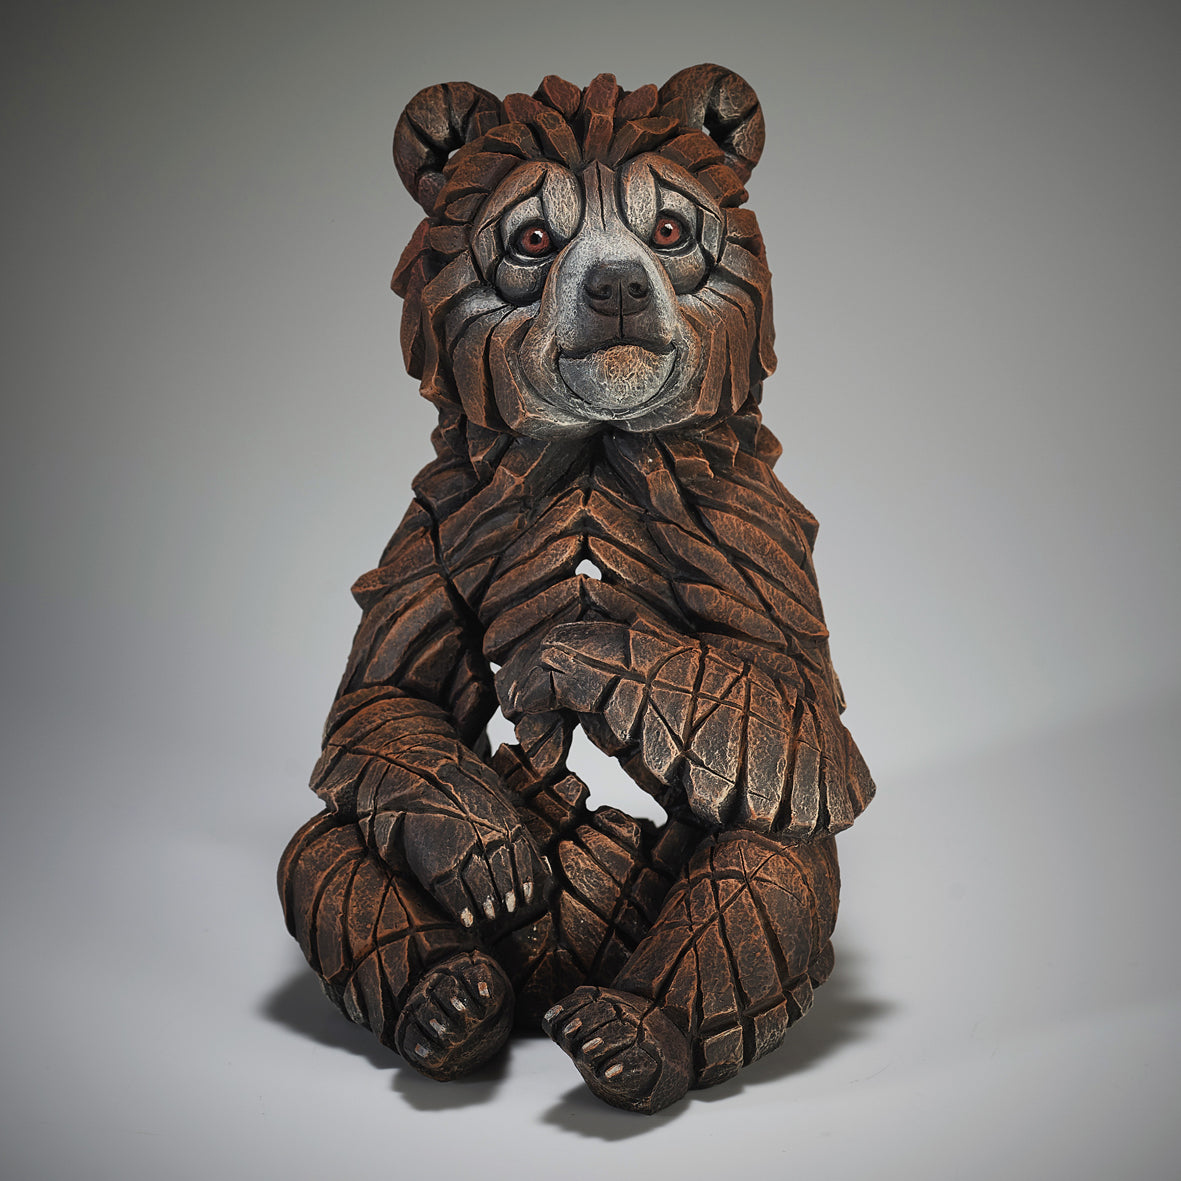 Bear Cub from Edge Sculpture by Matt Buckley